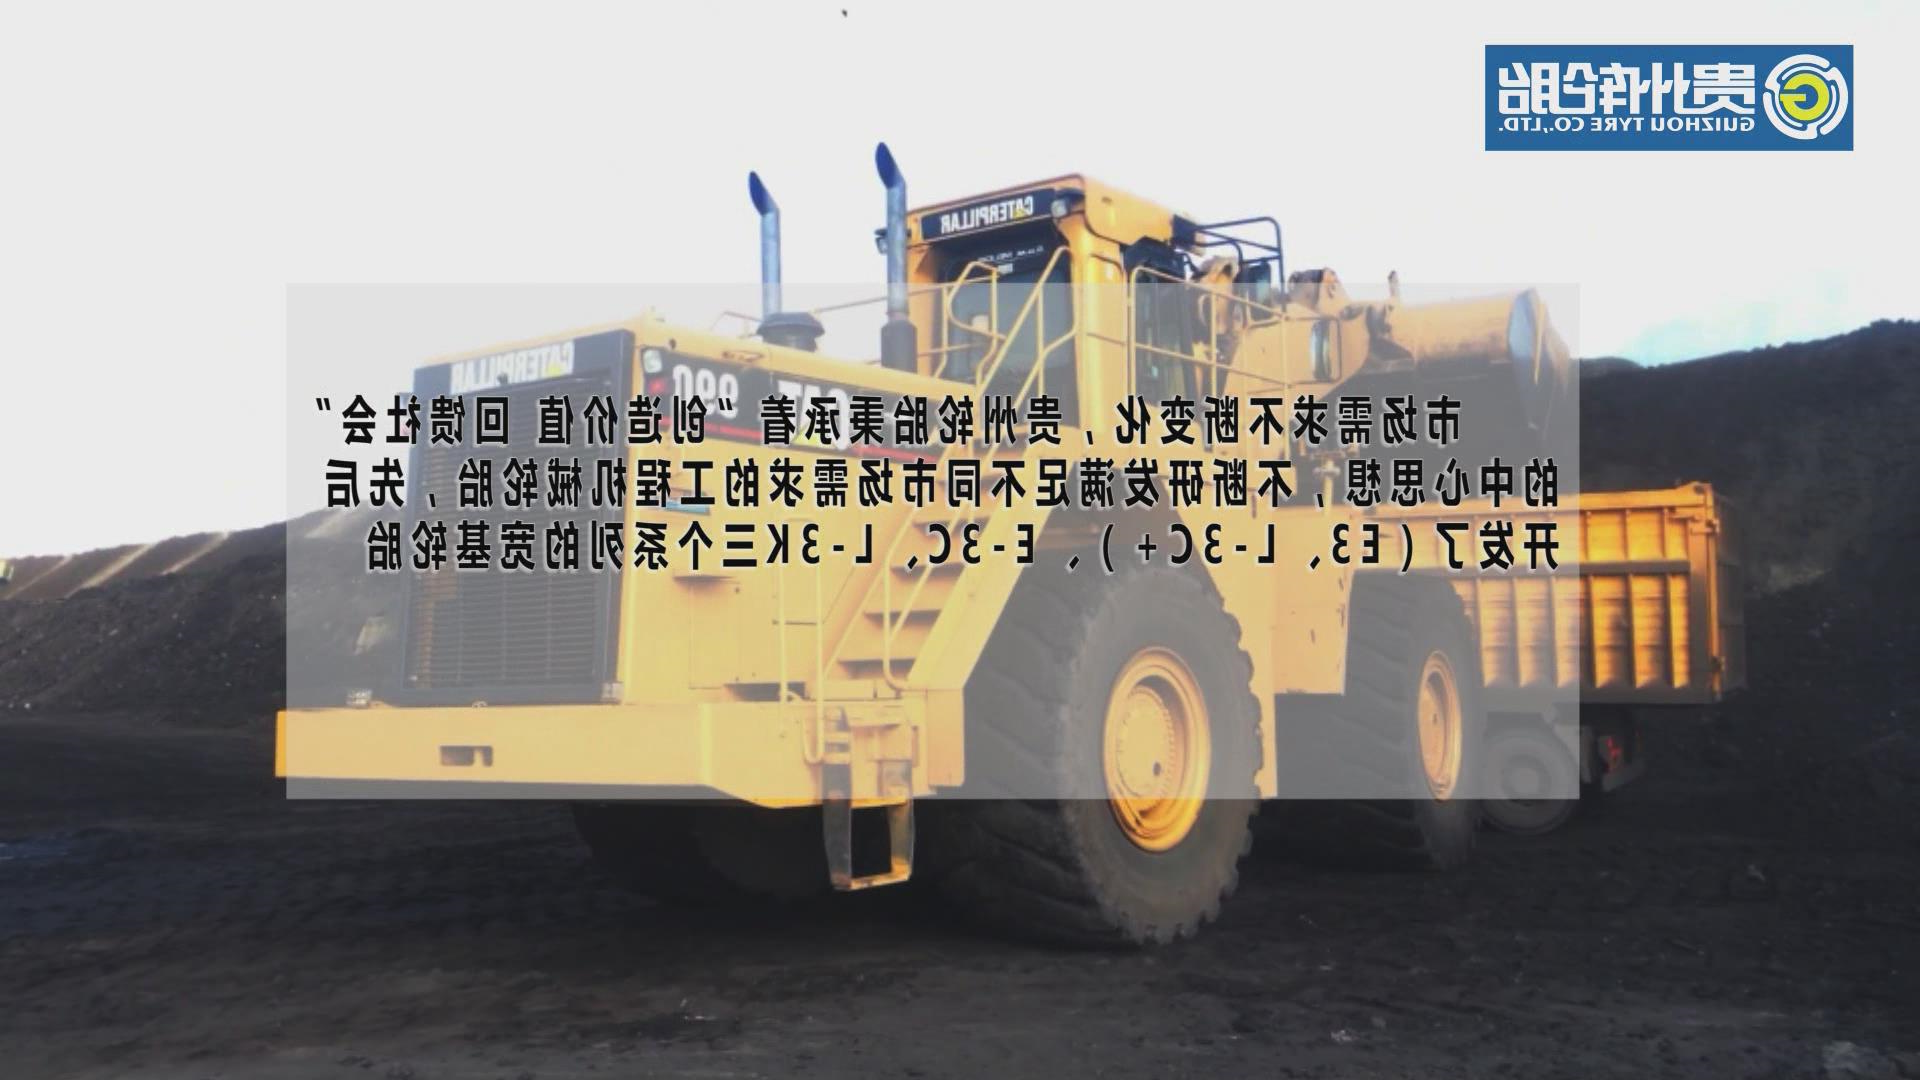 半岛官网（中国）登录入口
——装载机轮胎